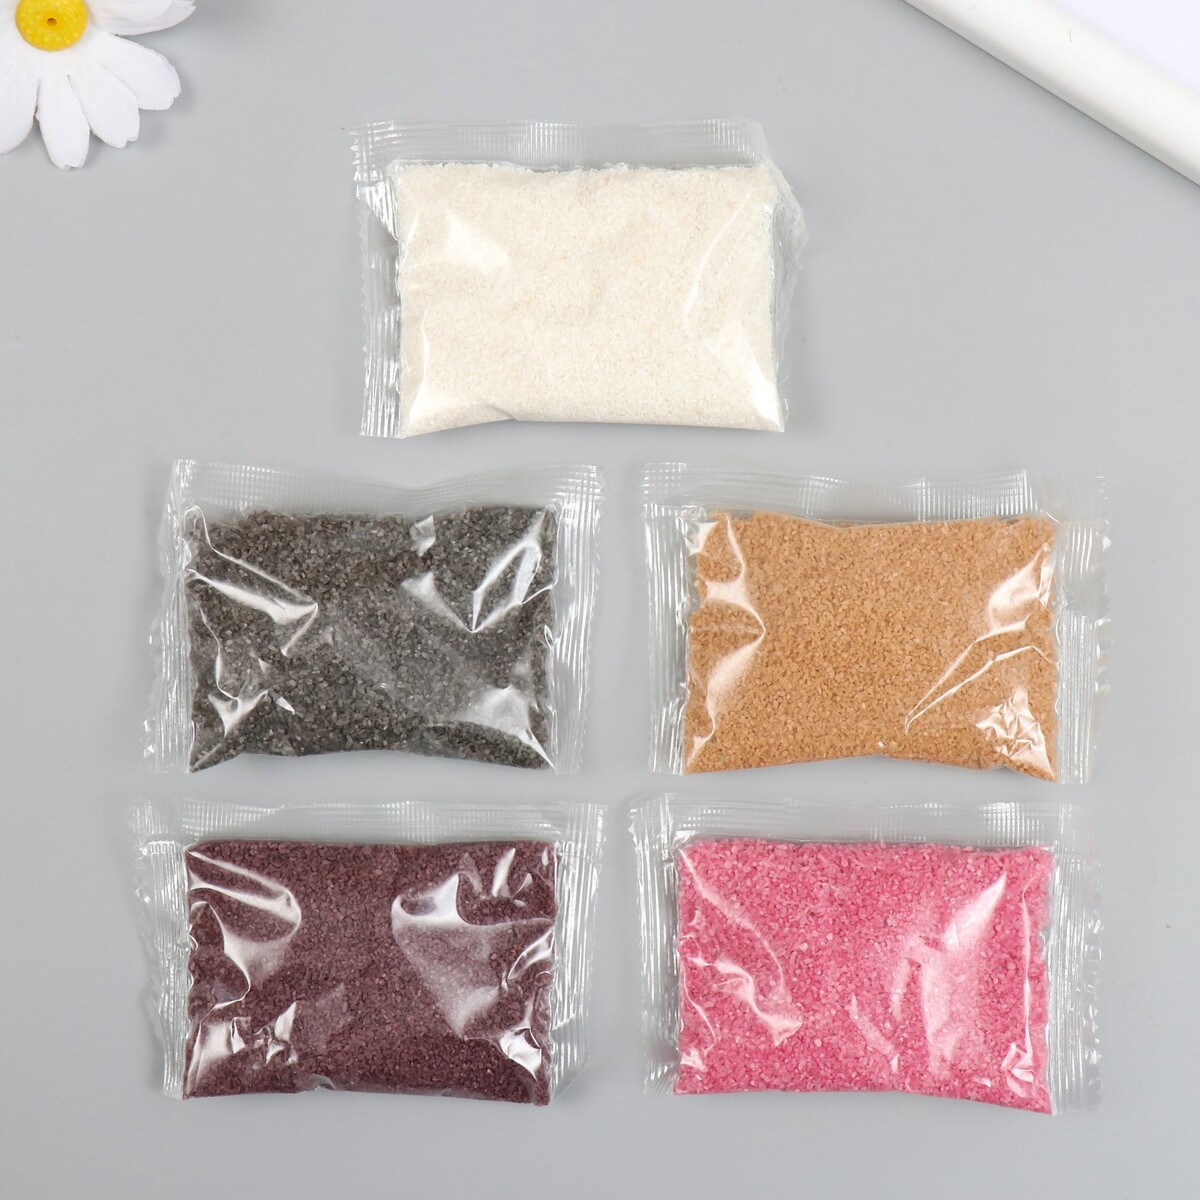 Набор цветного песка №10, 5 цветов, по 50 гр нордпласт набор для песка 18